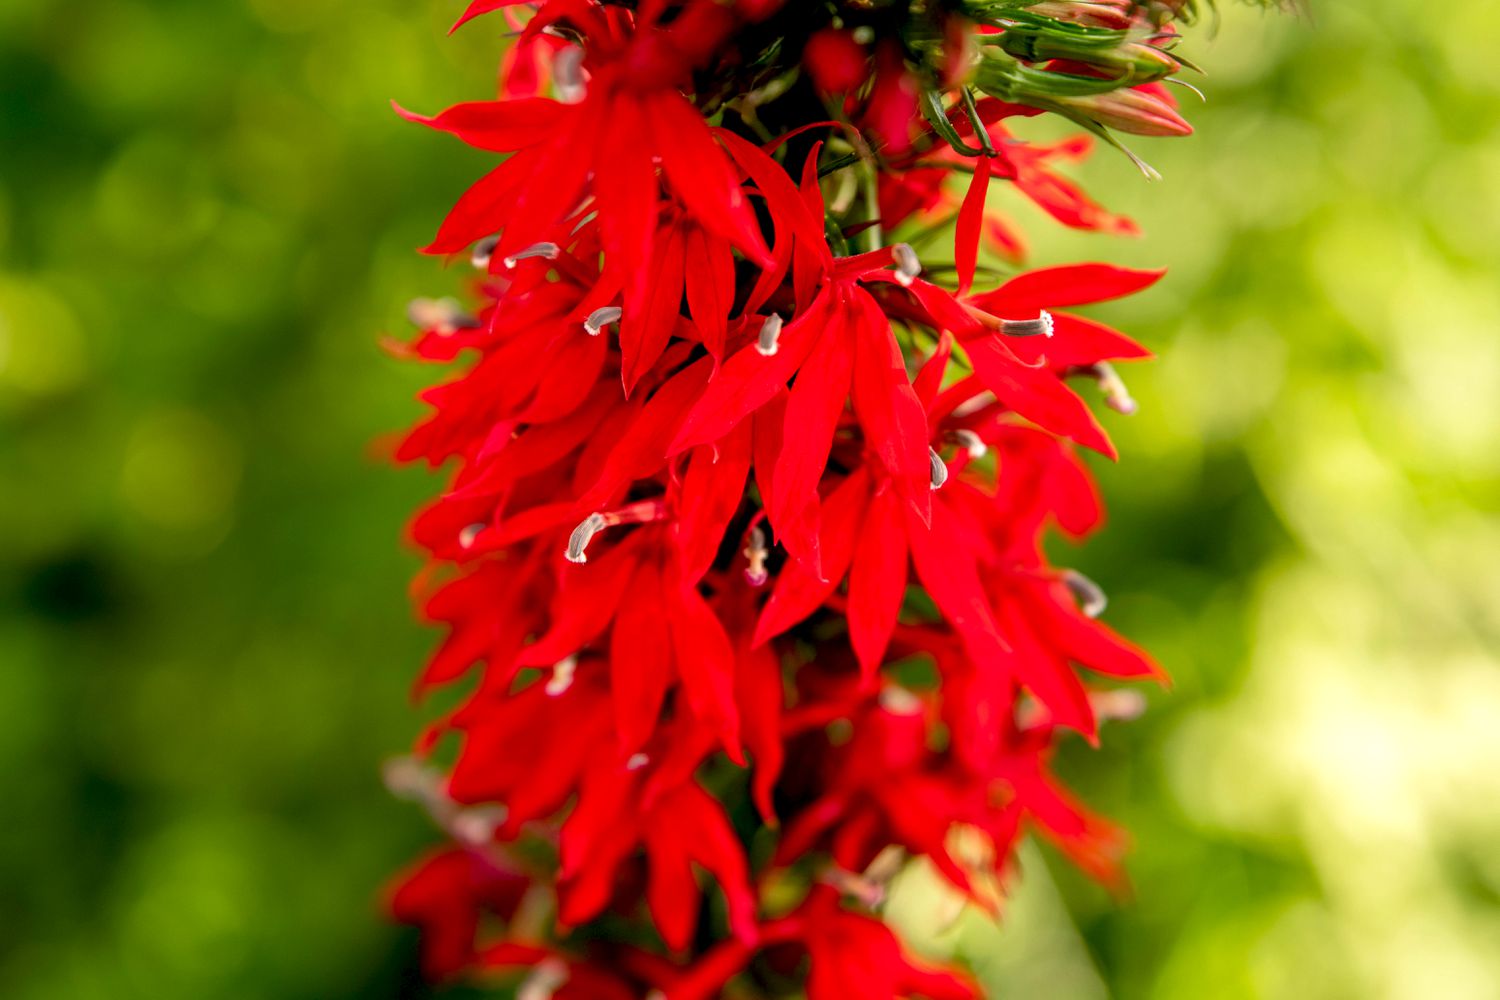 Kardinalblumenpflanze mit leuchtend roten Blütenblättern in Großaufnahme 